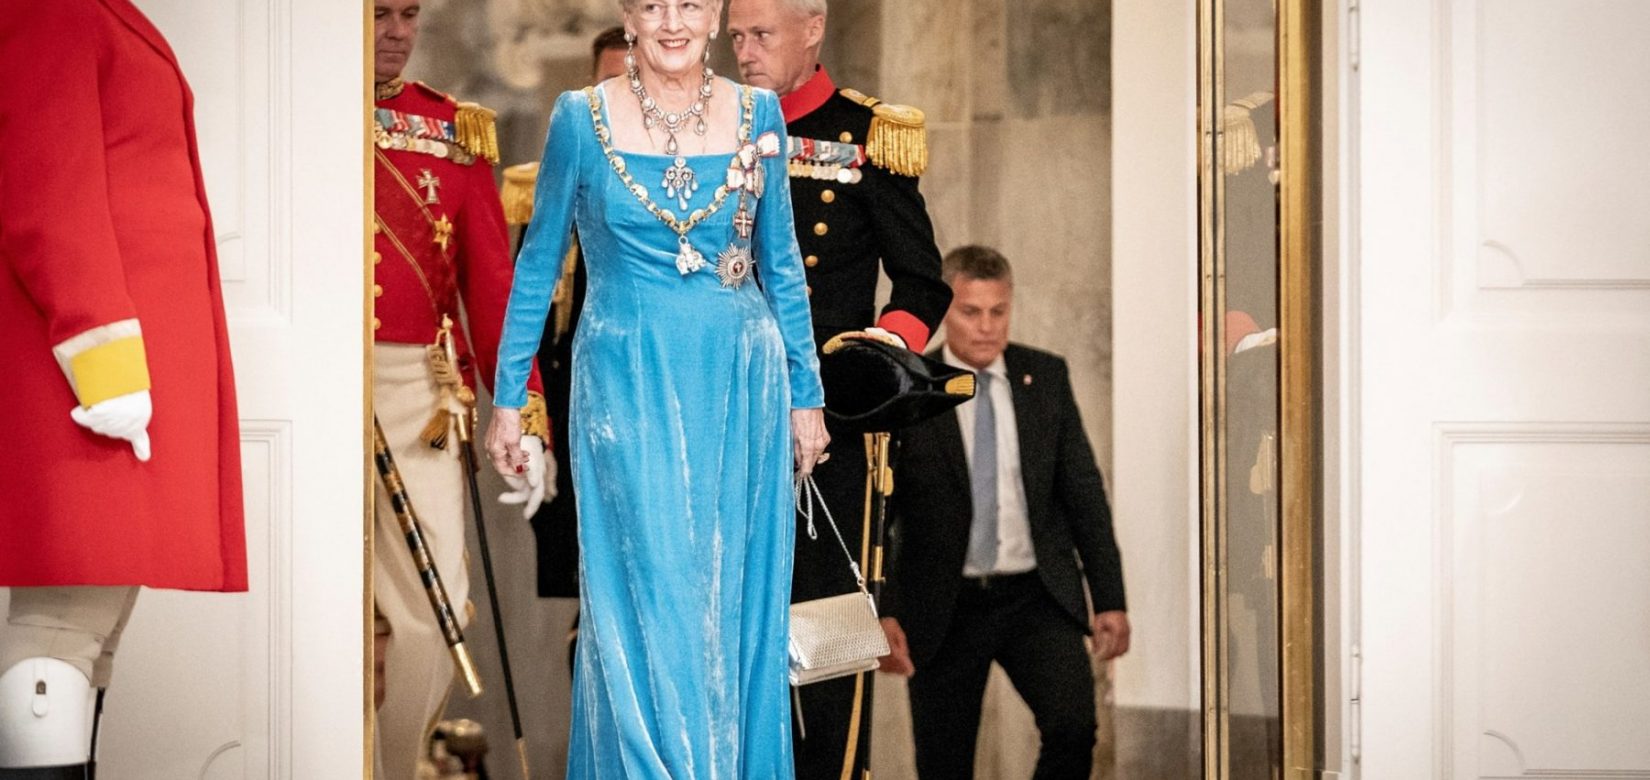 Η βασίλισσα Μαργκρέτε της Δανίας αφαιρεί τίτλους από τα εγγόνια της